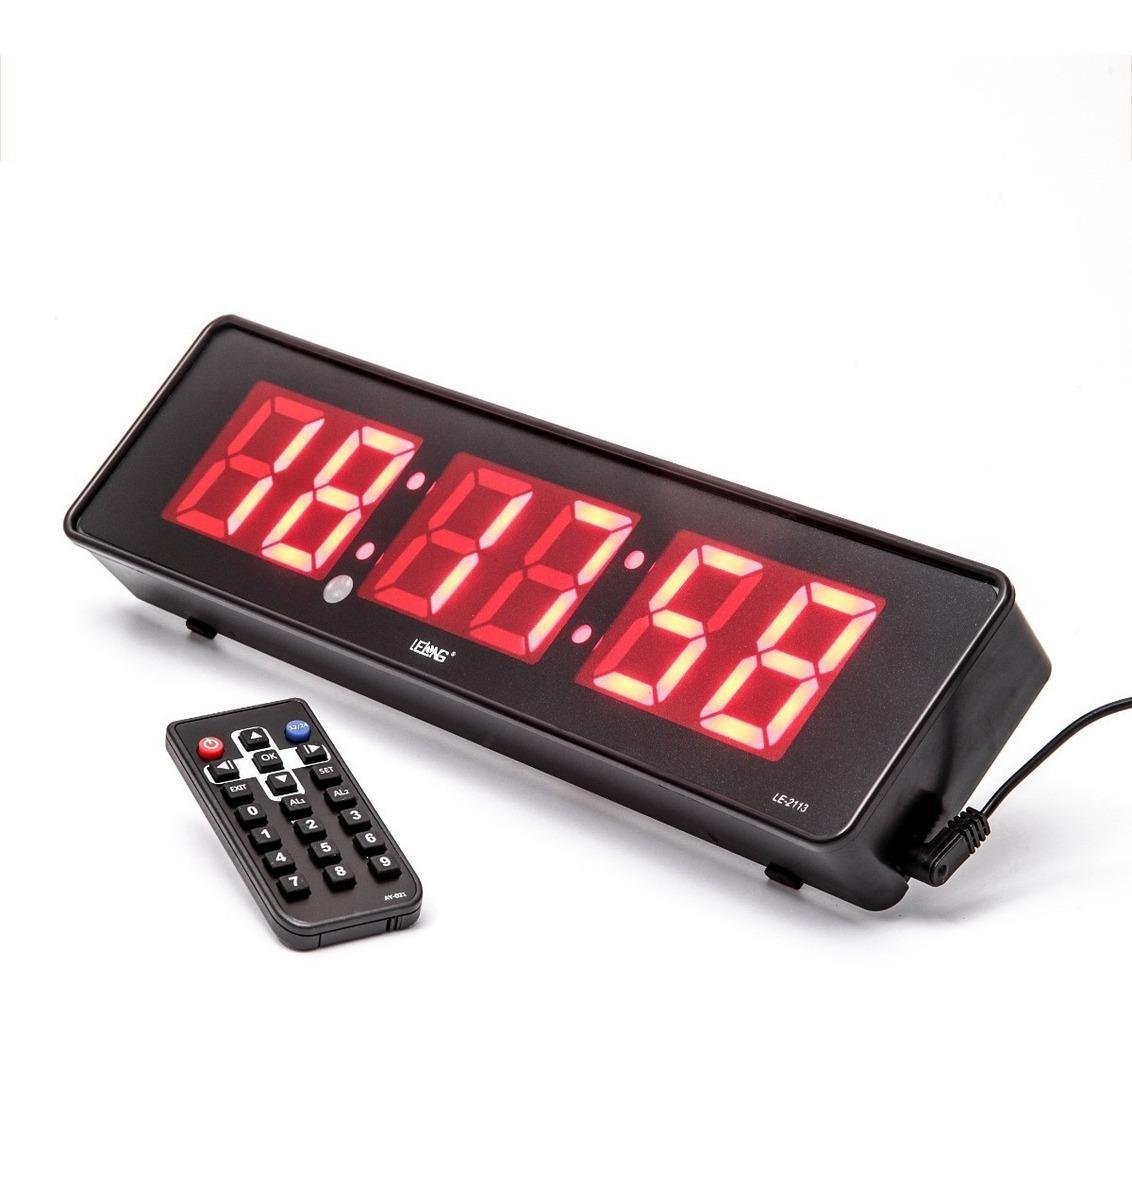 Cronometro Relógio Led Digital Parede Mesa com Controle 2113 - 2